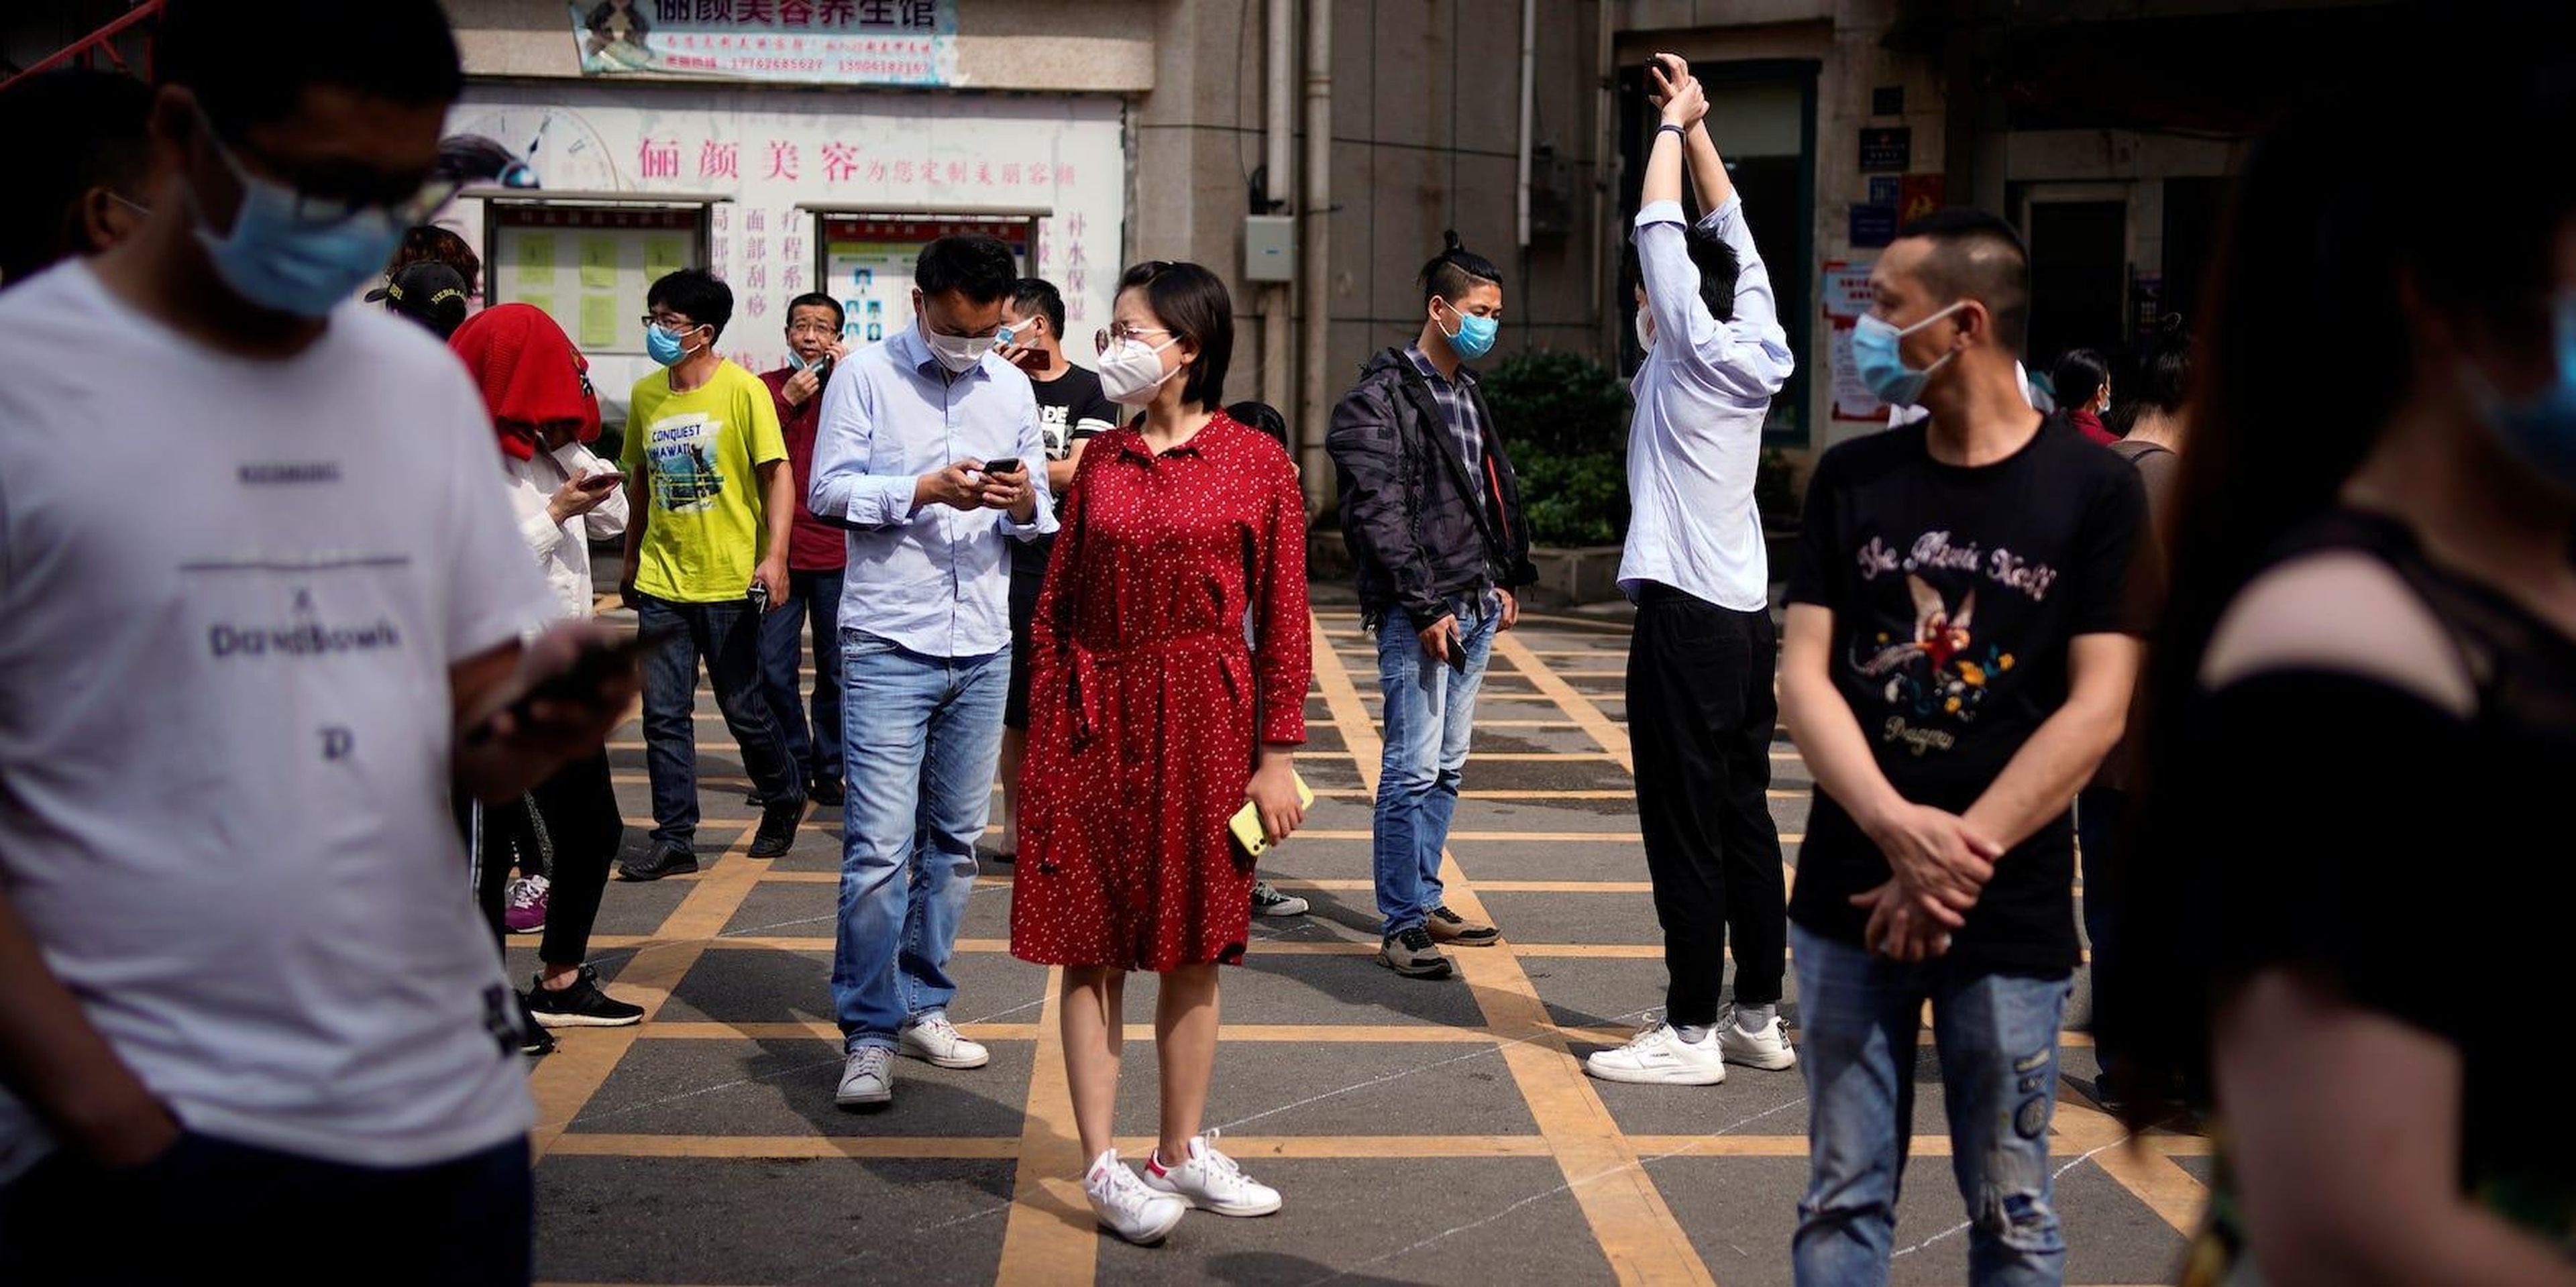 Los residentes forman una fila para las pruebas de ADN en un complejo residencial en Wuhan el 15 de mayo de 2020.